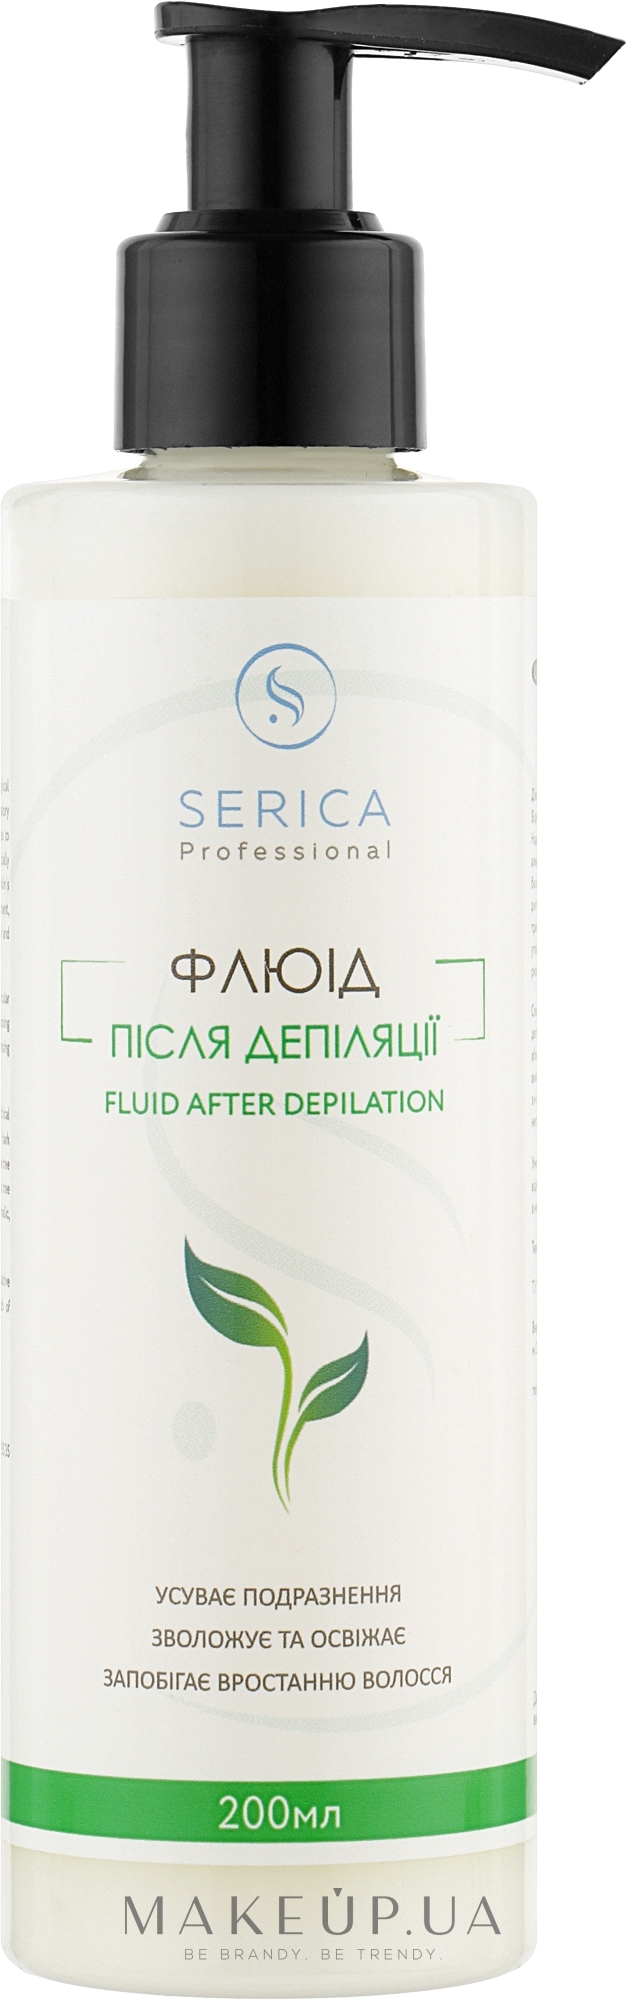 Флюид после депиляции - Serica Fluid After Depilation  — фото 200ml